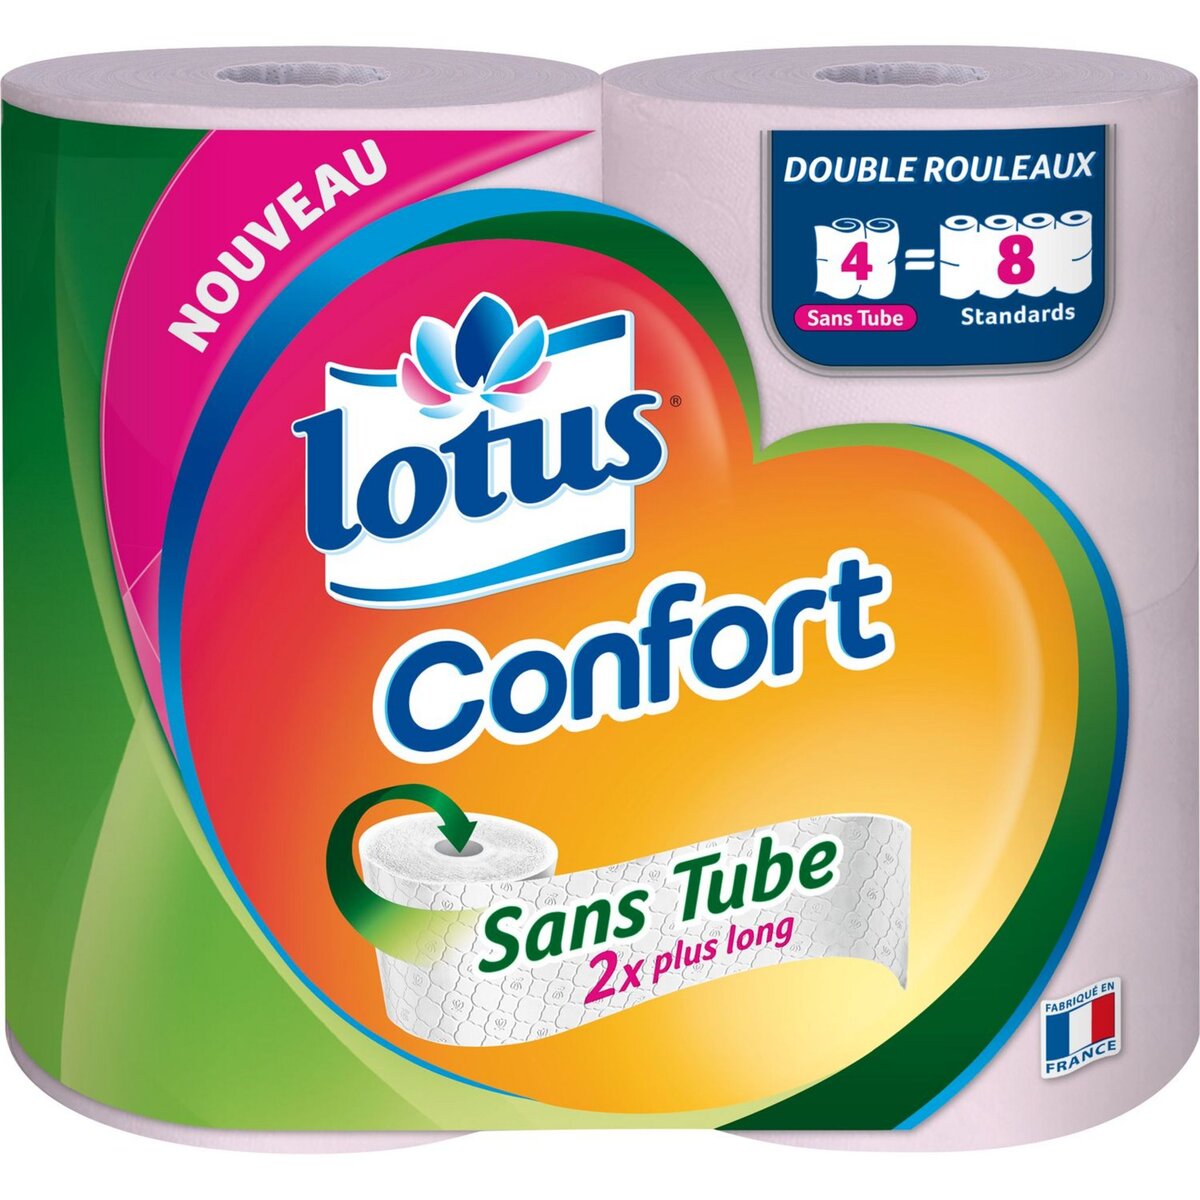 LOTUS Lotus Papier toilette blanc sans tube confort x4 = 8 standards 4 rouleaux